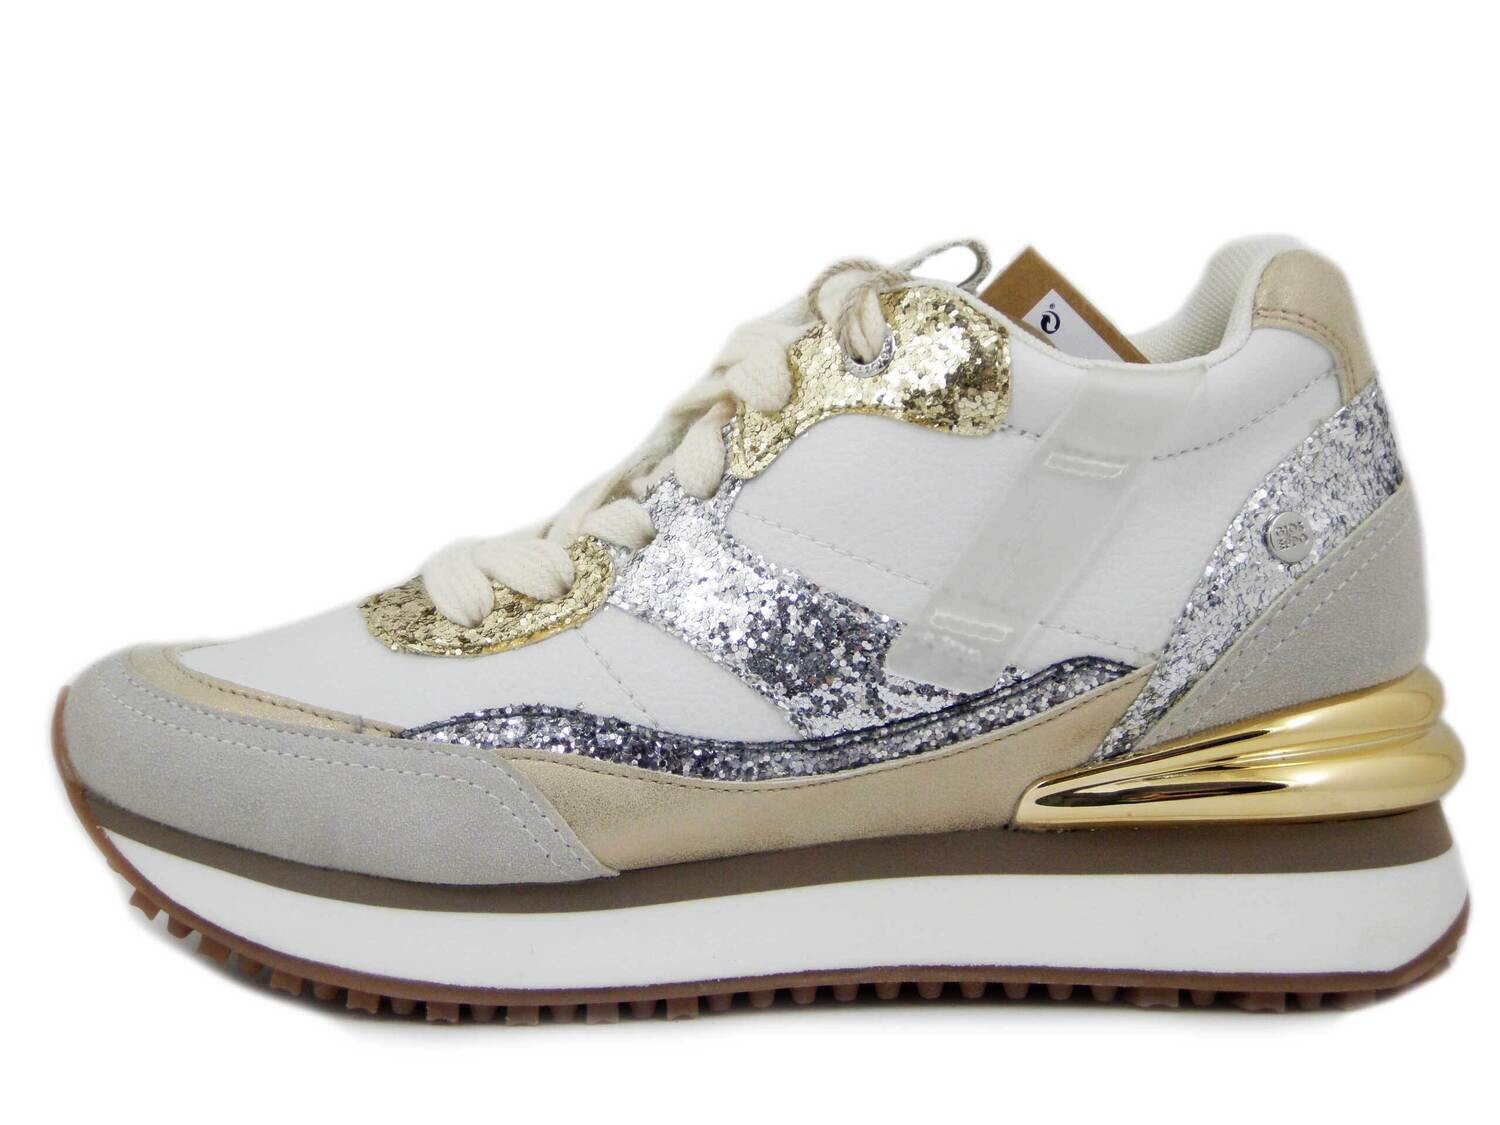 Sneakers Donna in Eco Pelle Bianco e Glitter, Zeppa Interna, GIOSEPPO 69053, TAGLIA DONNA: 40